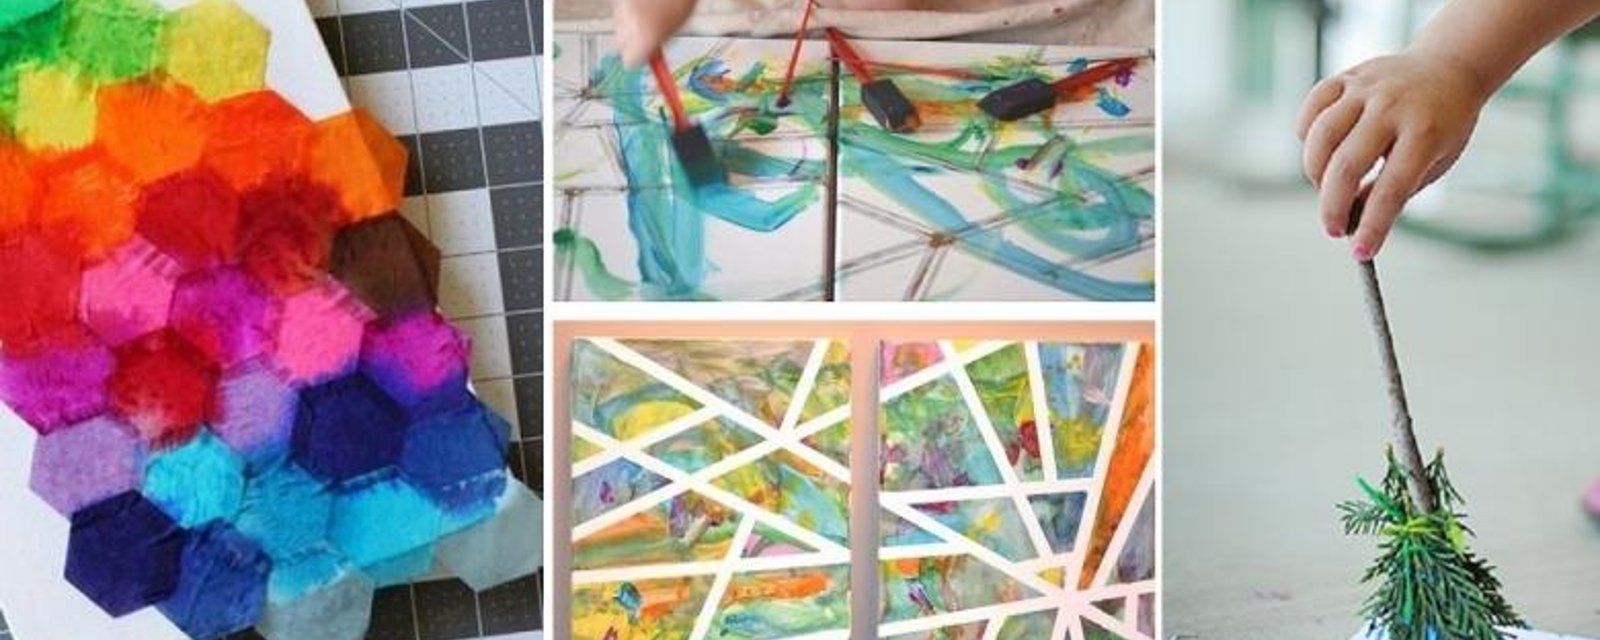 7 Magnifiques activités de peinture et collage à faire avec les enfants! 